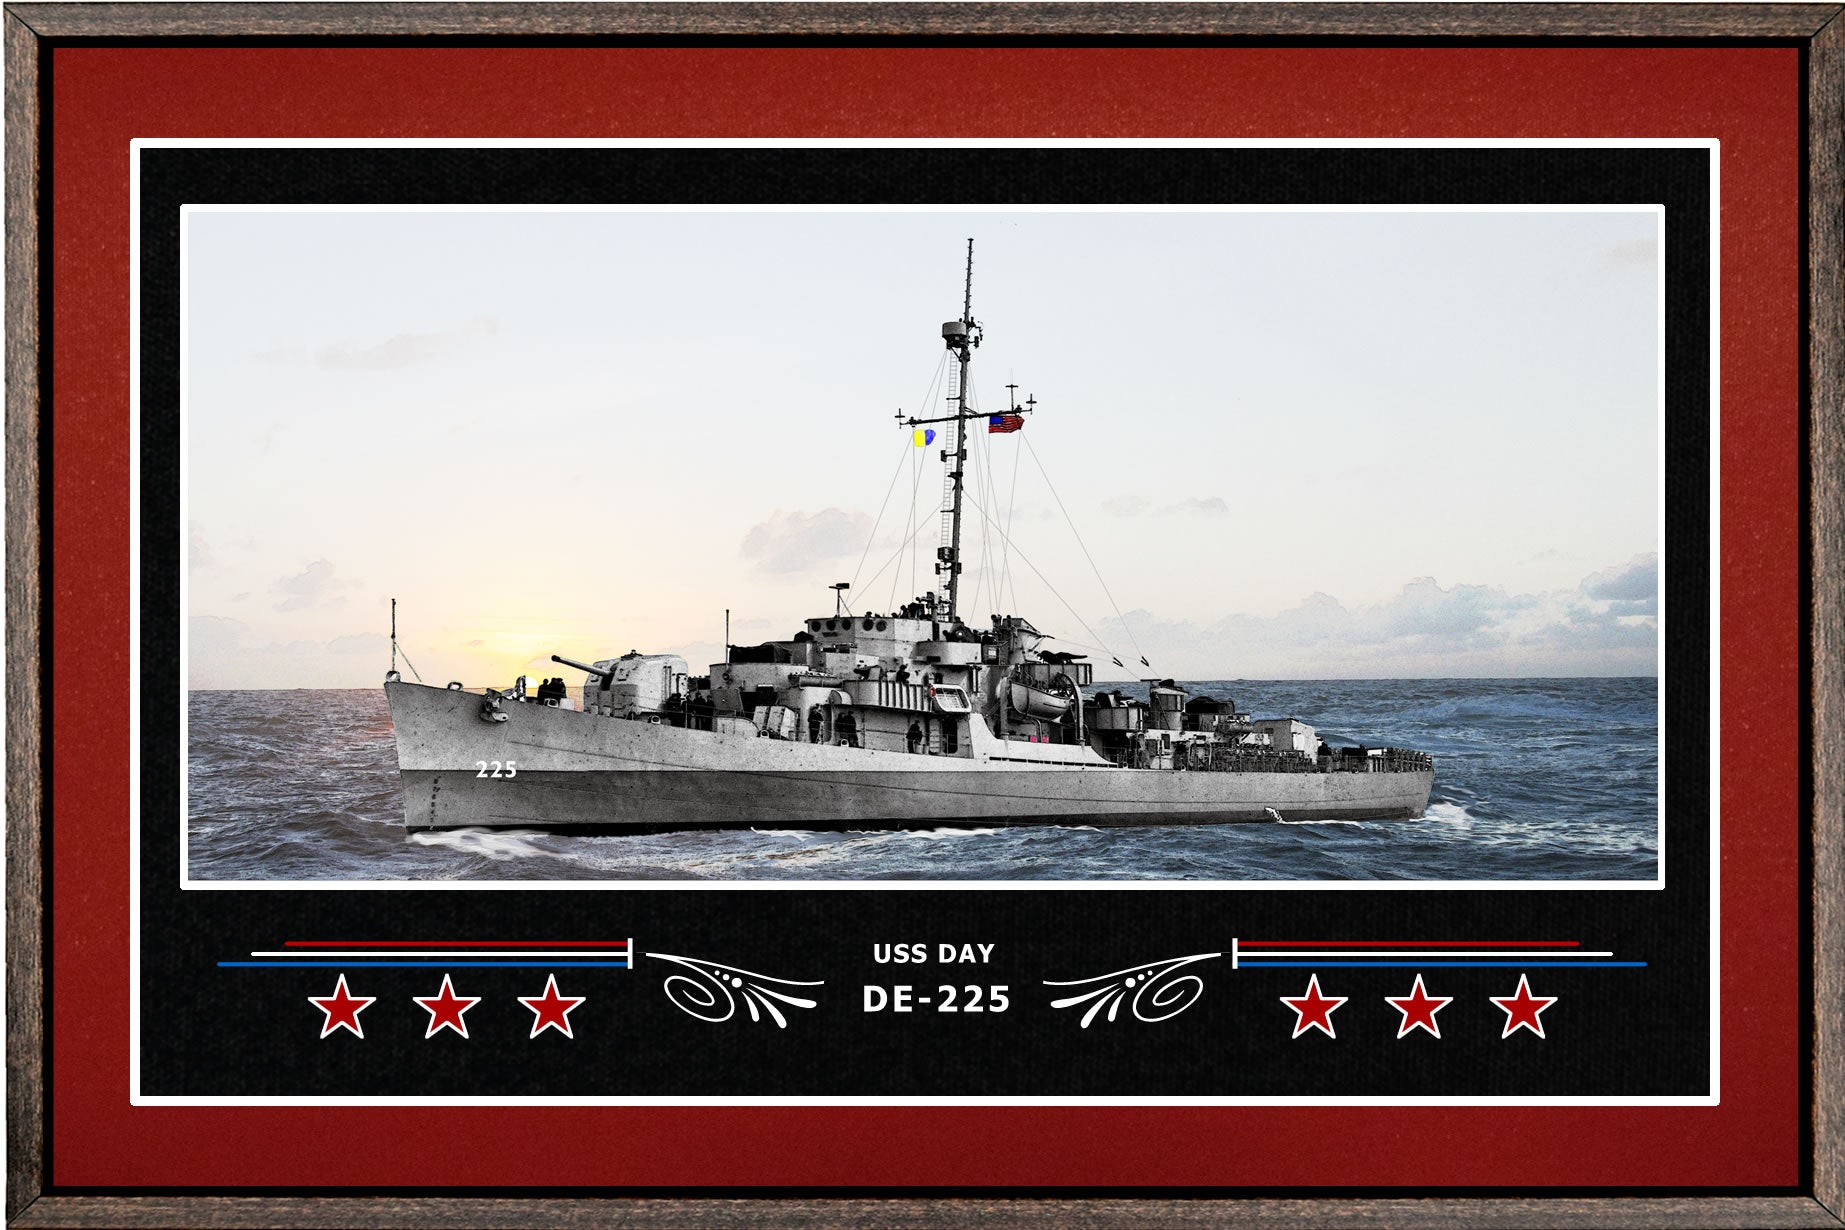 USS DAY DE 225 BOX FRAMED CANVAS ART BURGUNDY